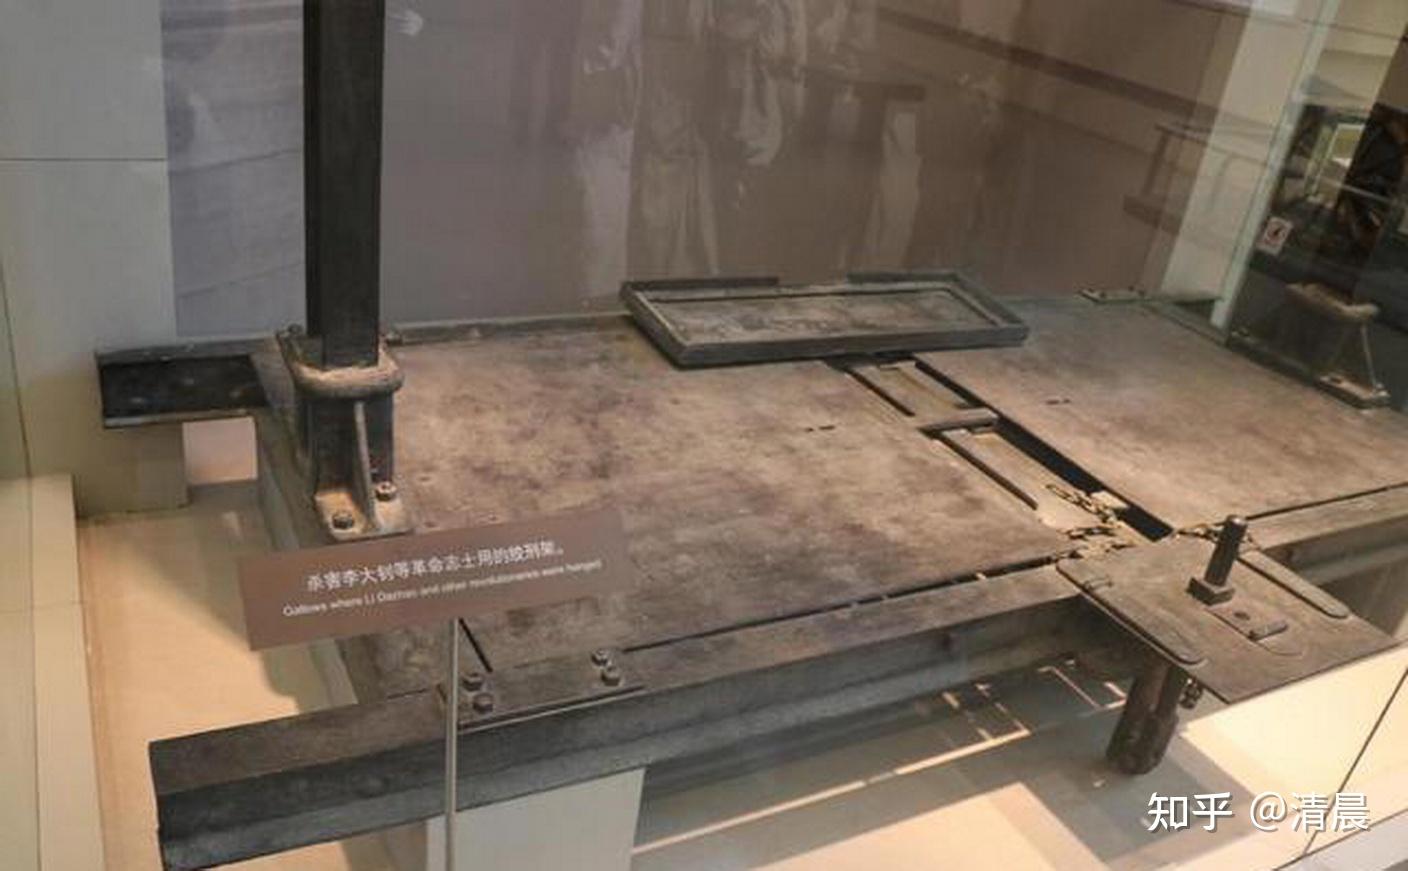 中国博物馆0001号文物竟是一绞刑架，其背后的故事令人感动又愤怒 - 知乎